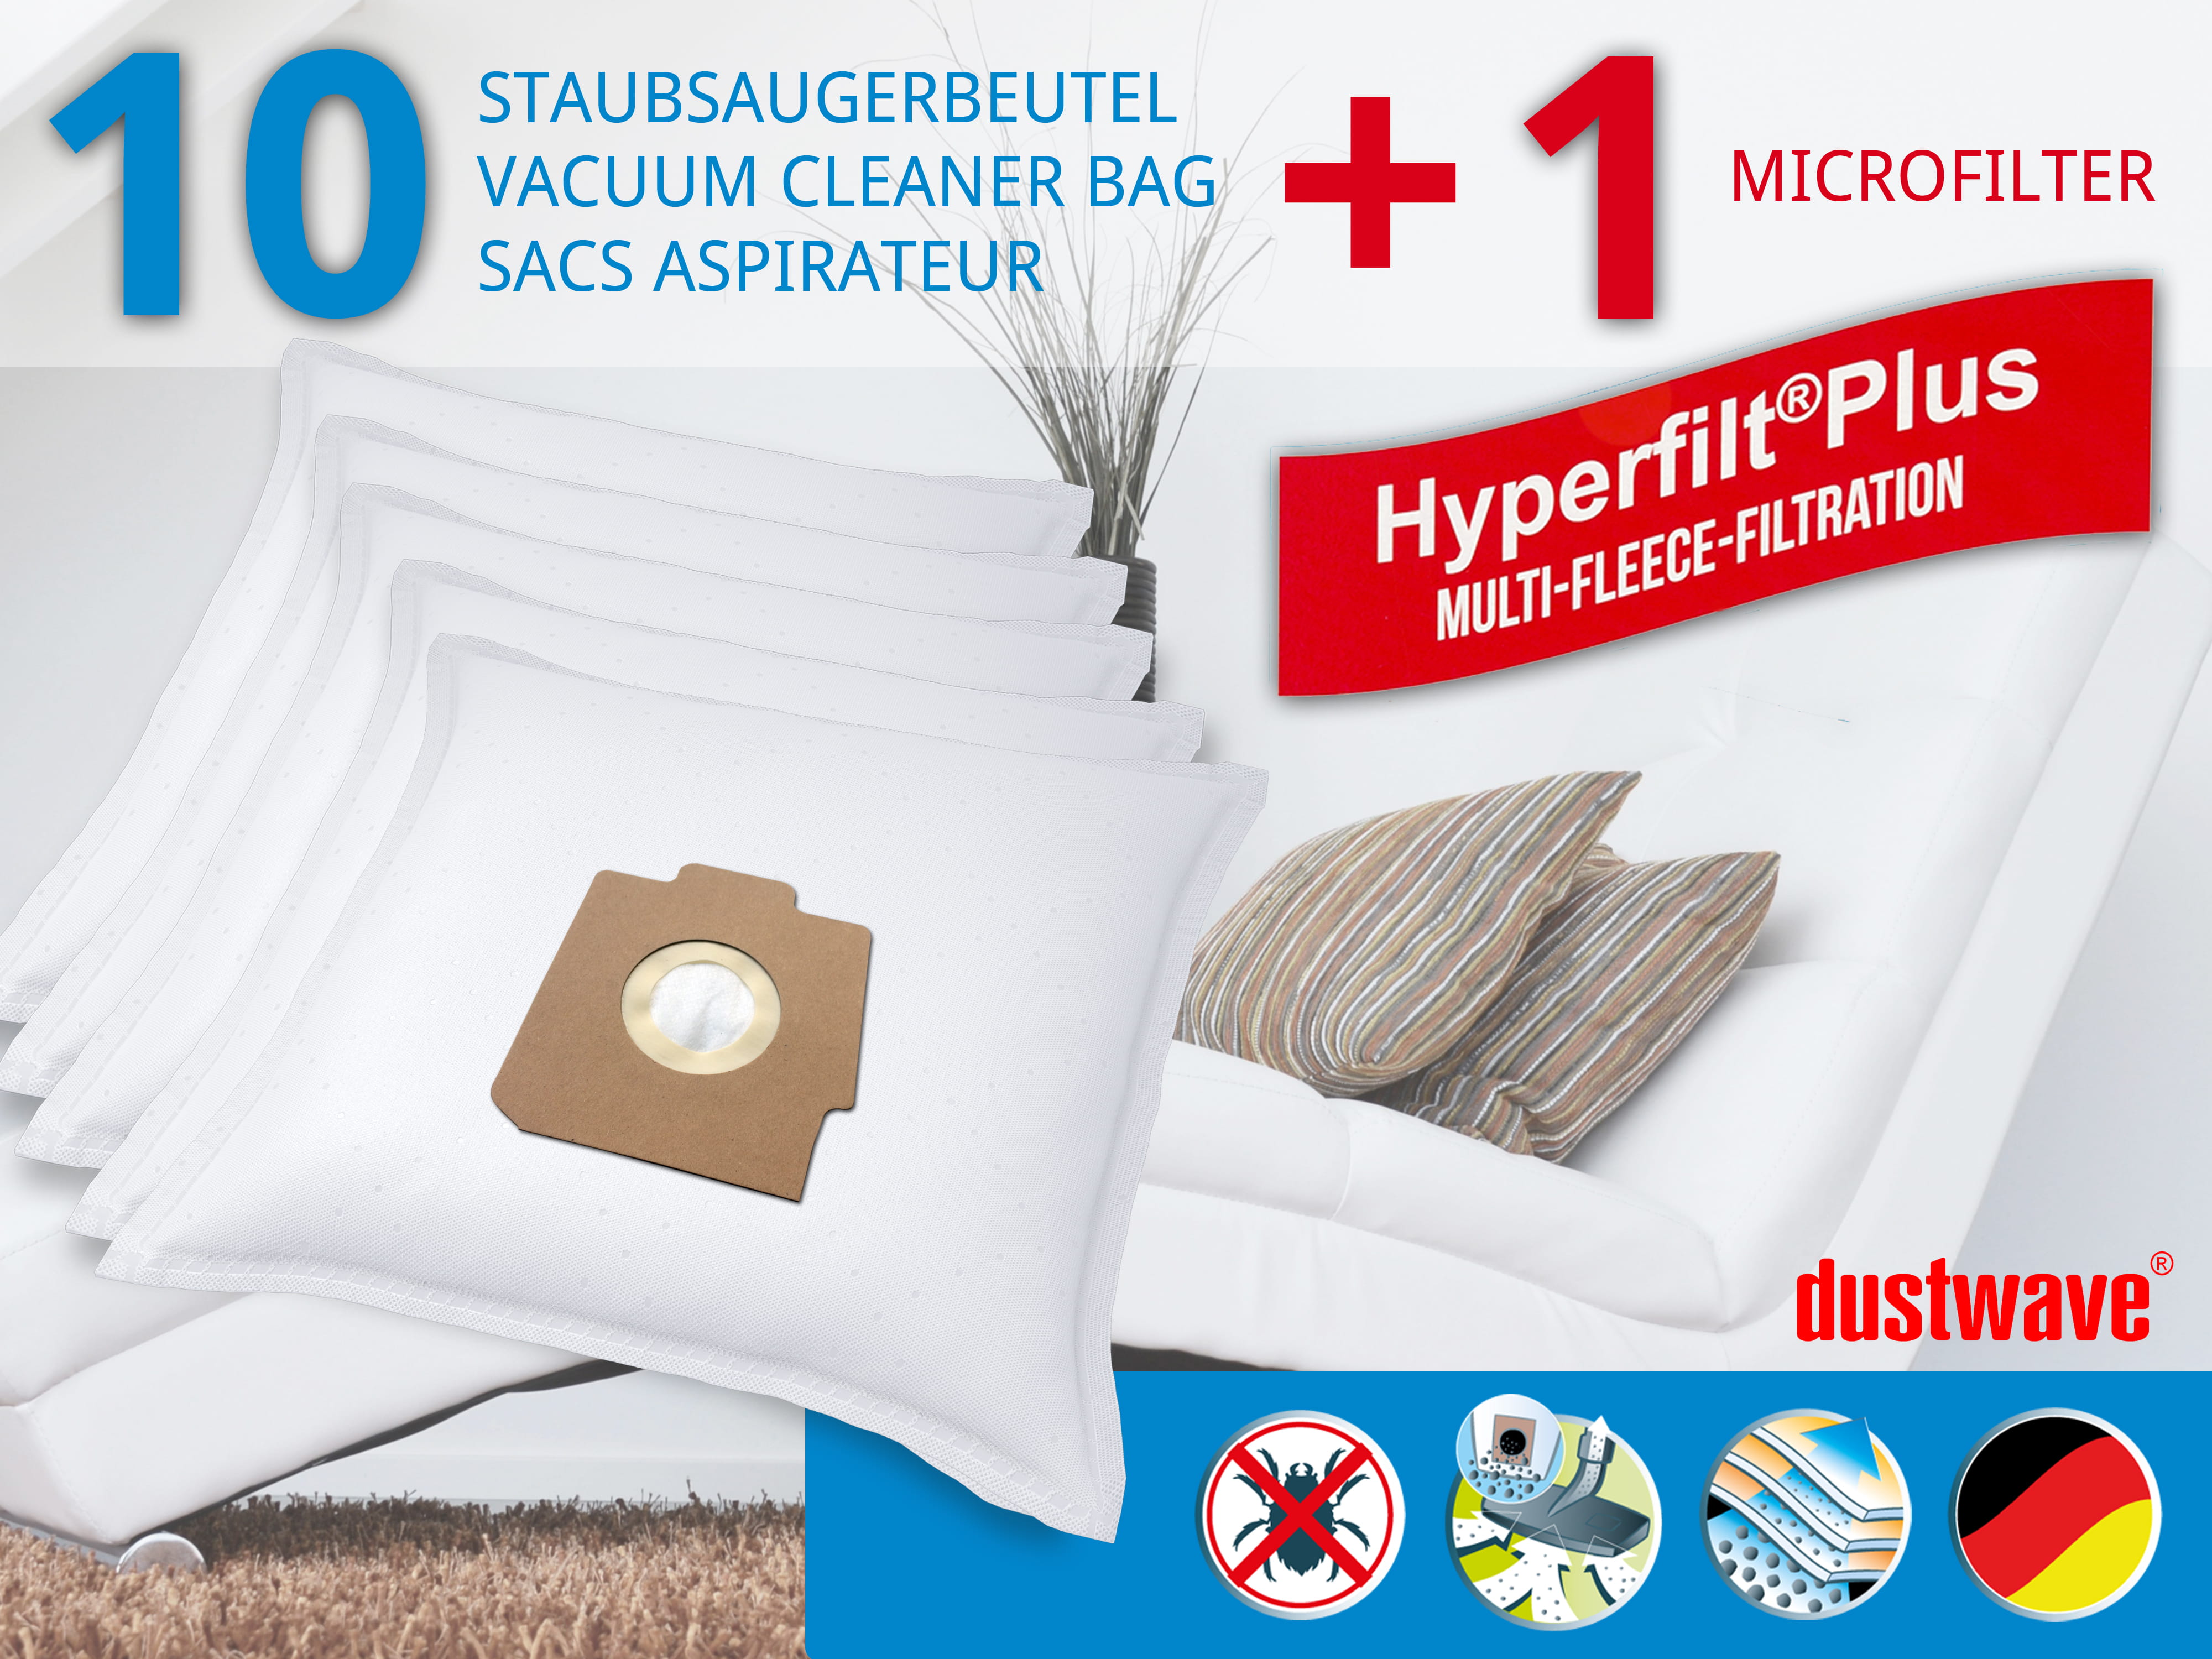 Dustwave® 10 Staubsaugerbeutel für Hoover Elite 1200 - hocheffizient, mehrlagiges Mikrovlies mit Hygieneverschluss - Made in Germany